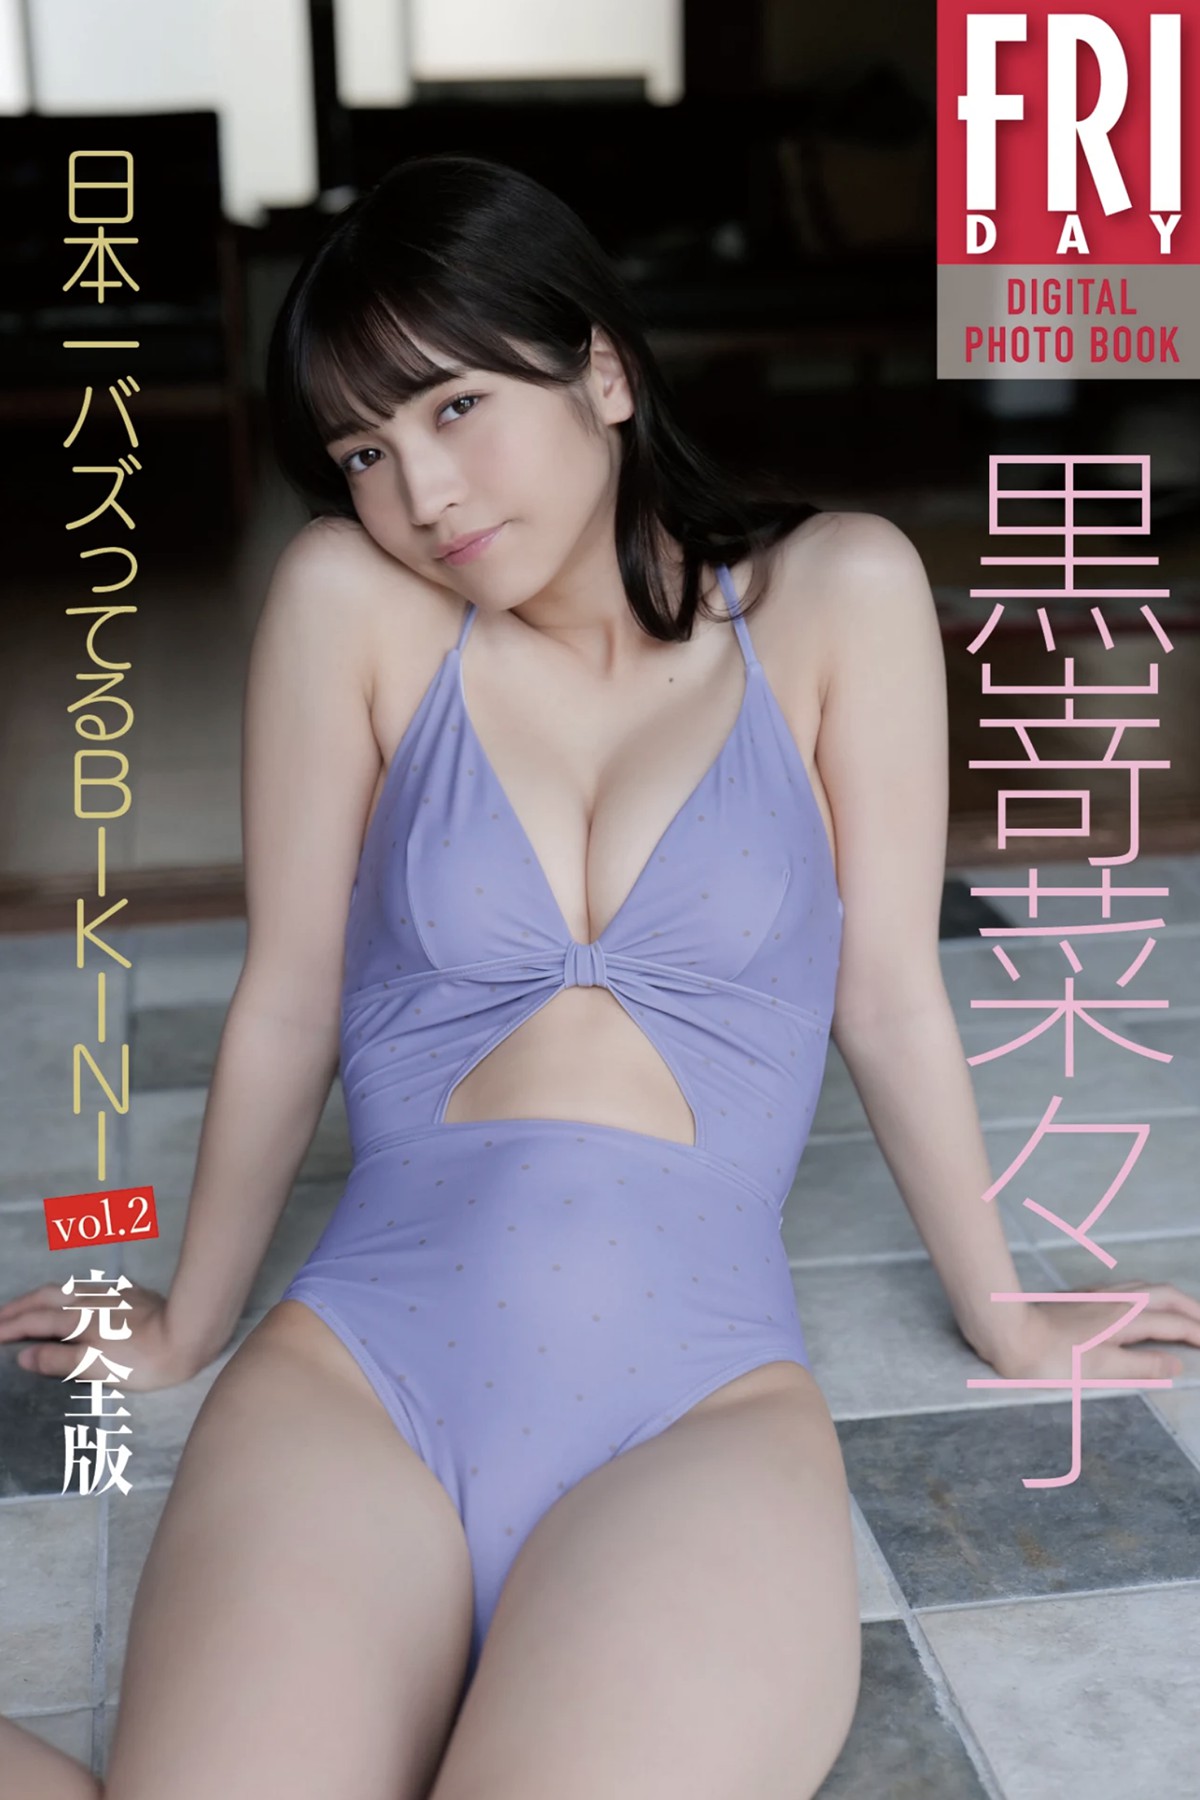 FRIDAYデジタル写真集 Kurosaki 黒嵜菜々子 – Bikini Vol-2 20 Cuts